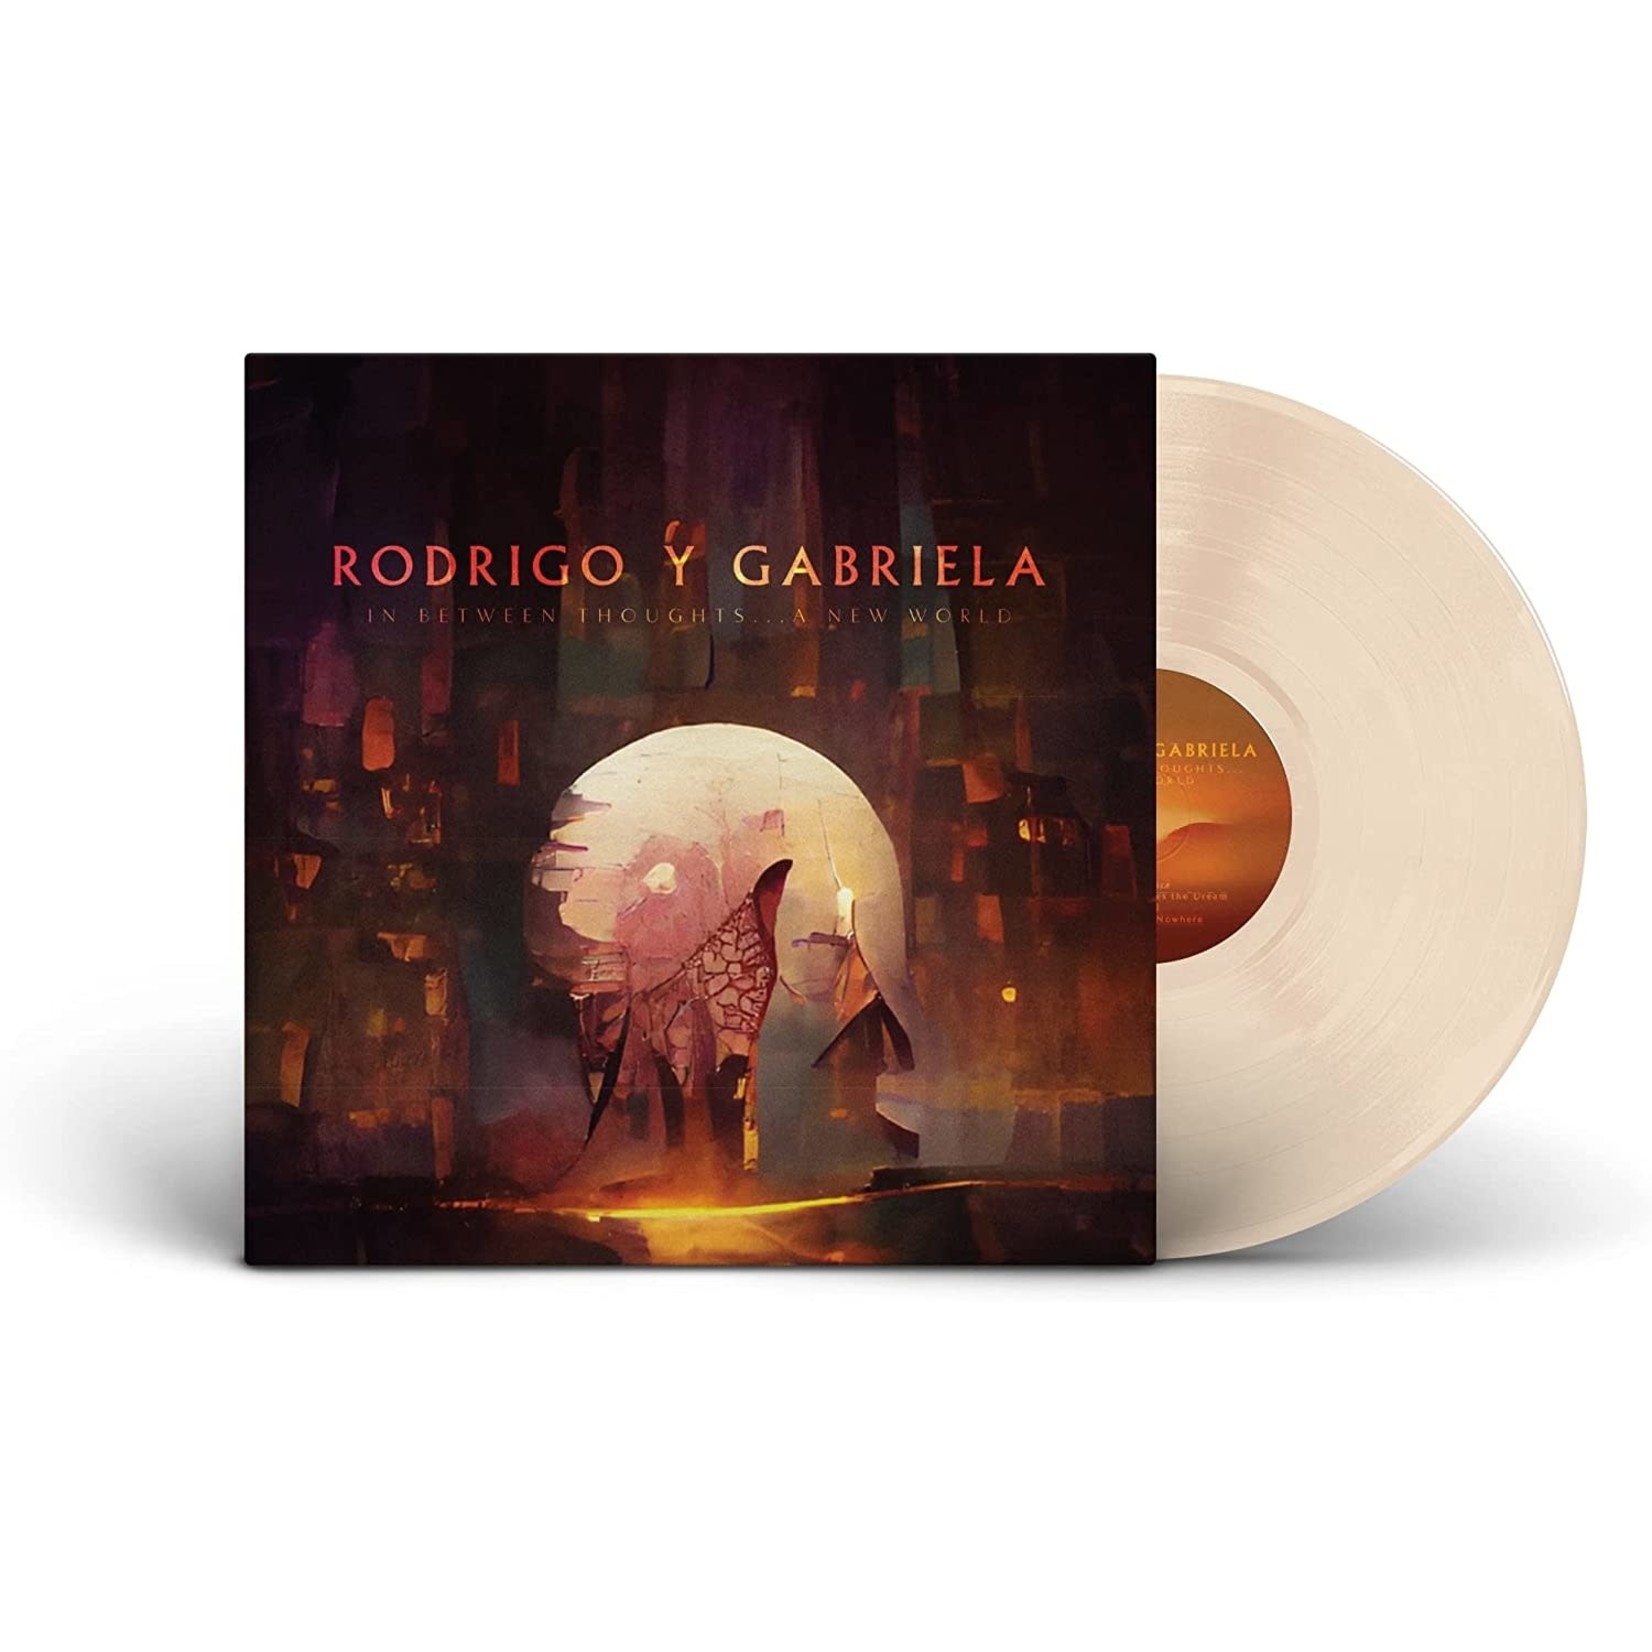 Vinyl Rodrigo Y Gabriela - In Between Thoughts... A New World